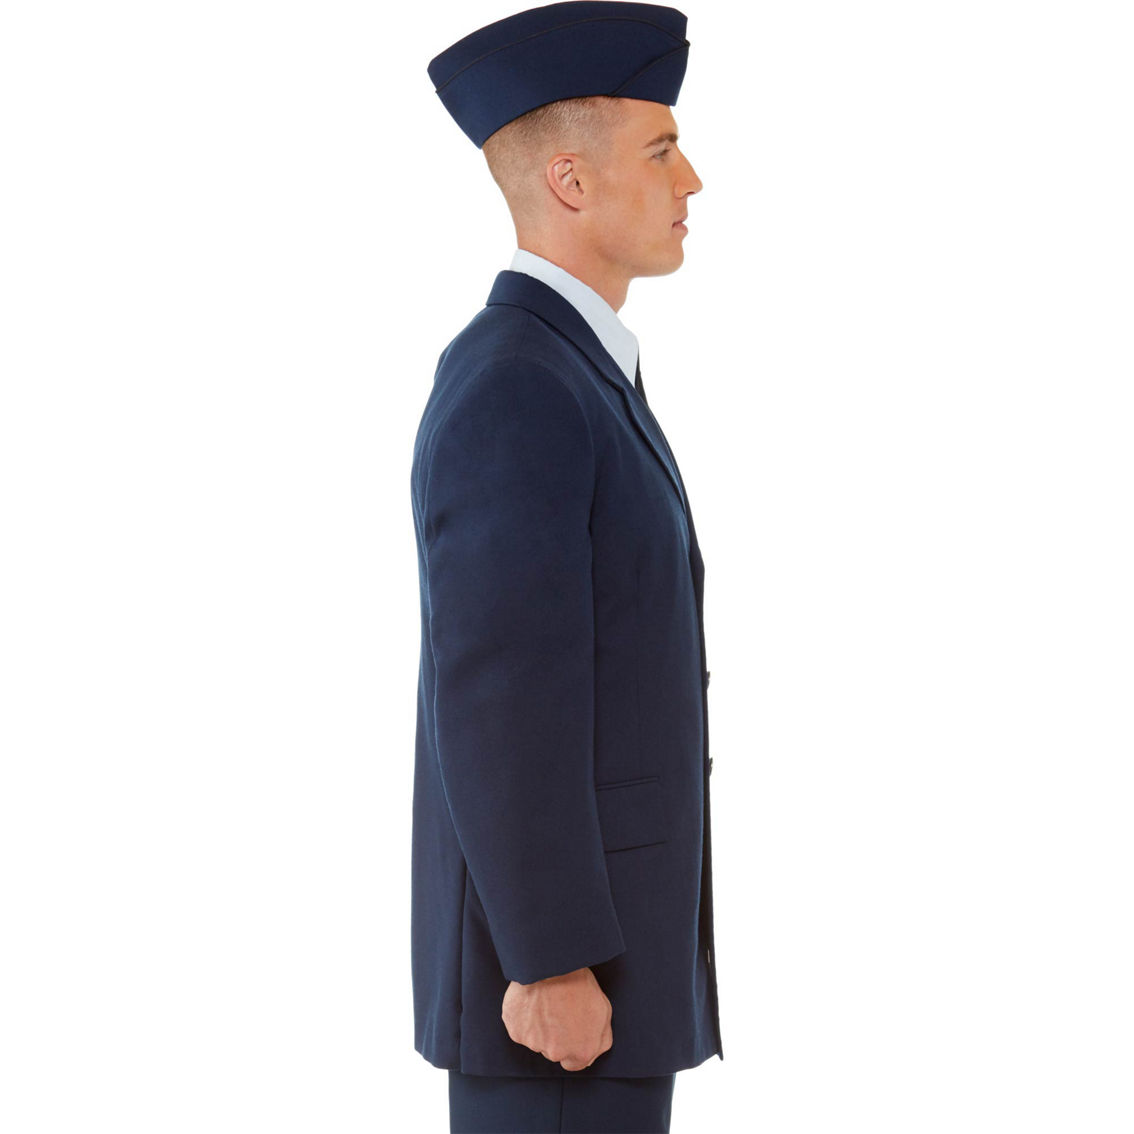 Dlats Air Force Men's Enlisted Service Dress Coat Coats